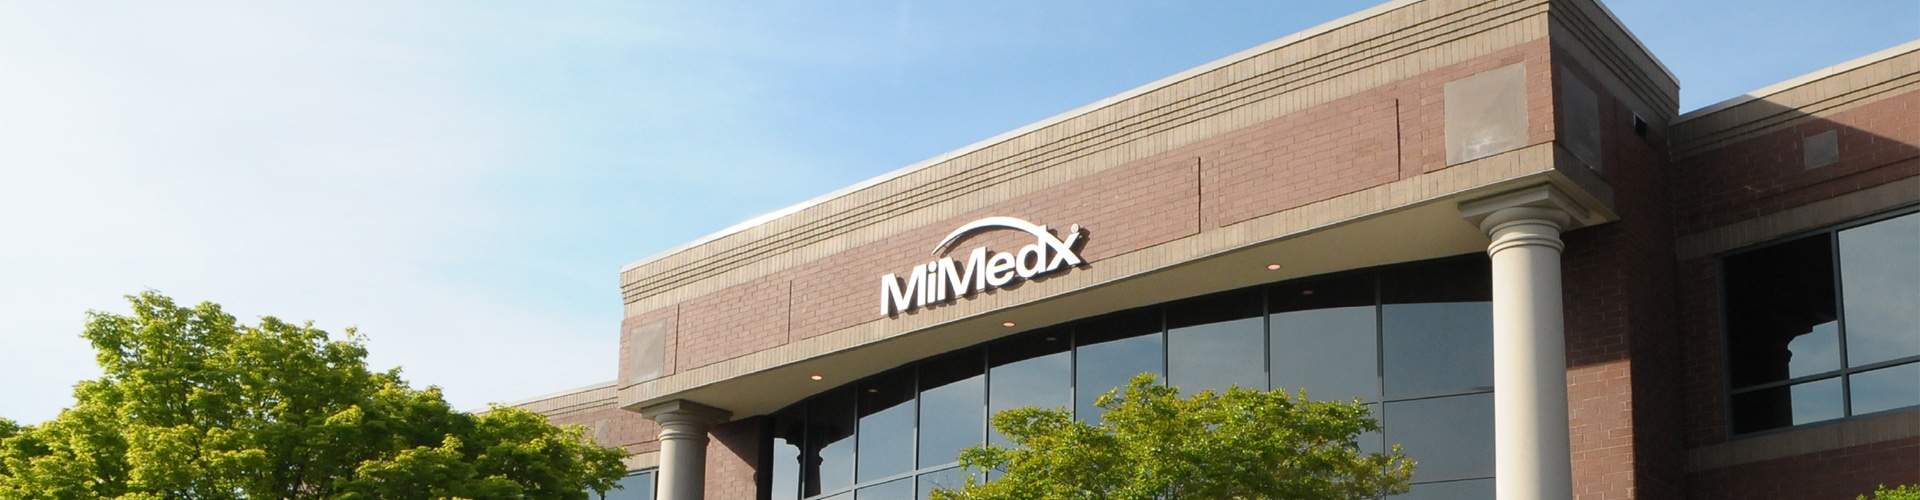 MiMedx building